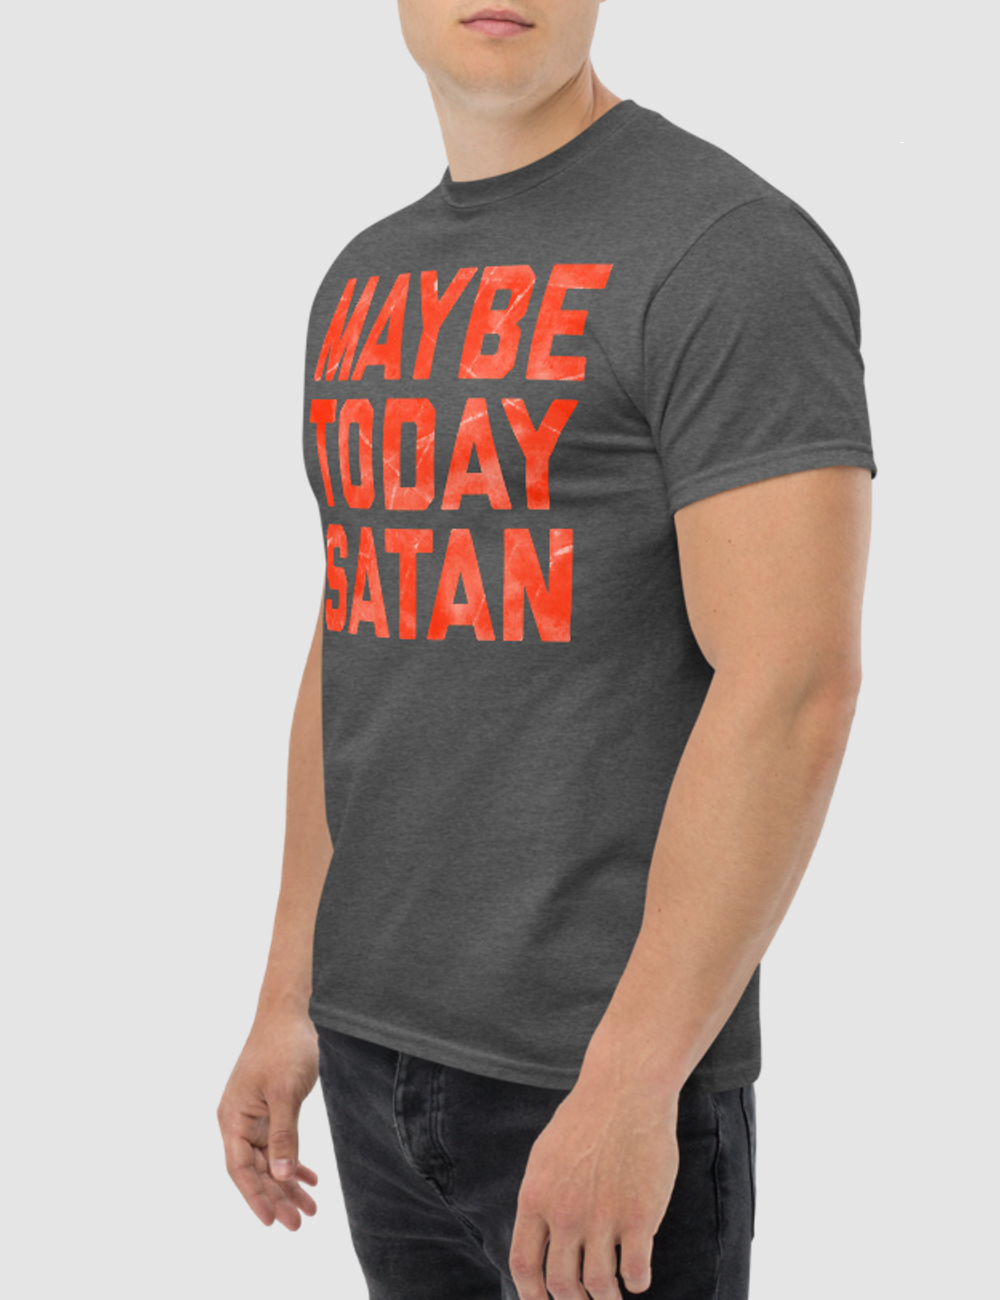 Maybe Today Satan | T-Shirt OniTakai